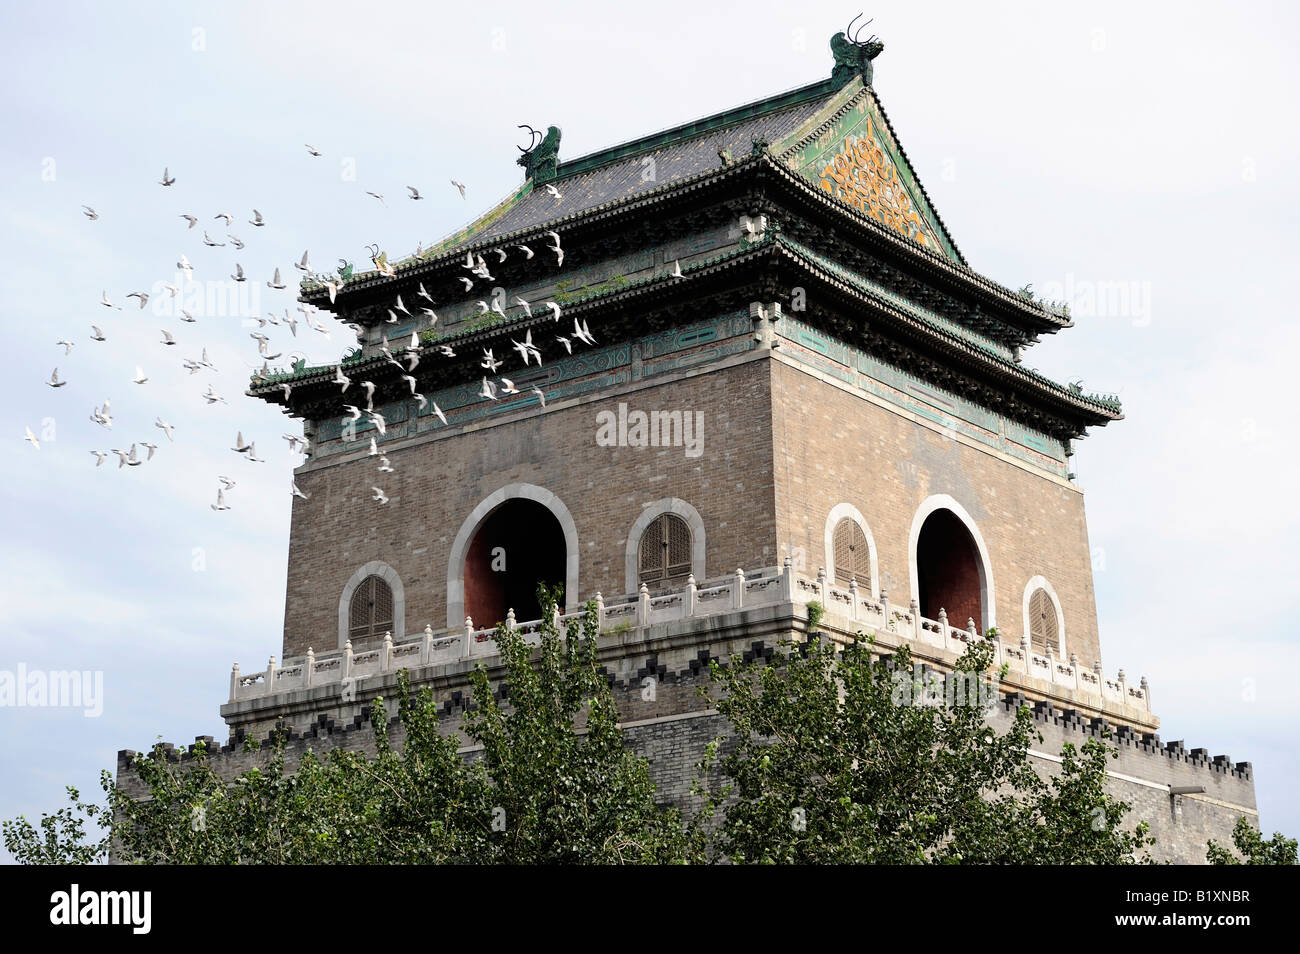 La torre campanaria a Pechino in Cina. 05-lug-2008 Foto Stock